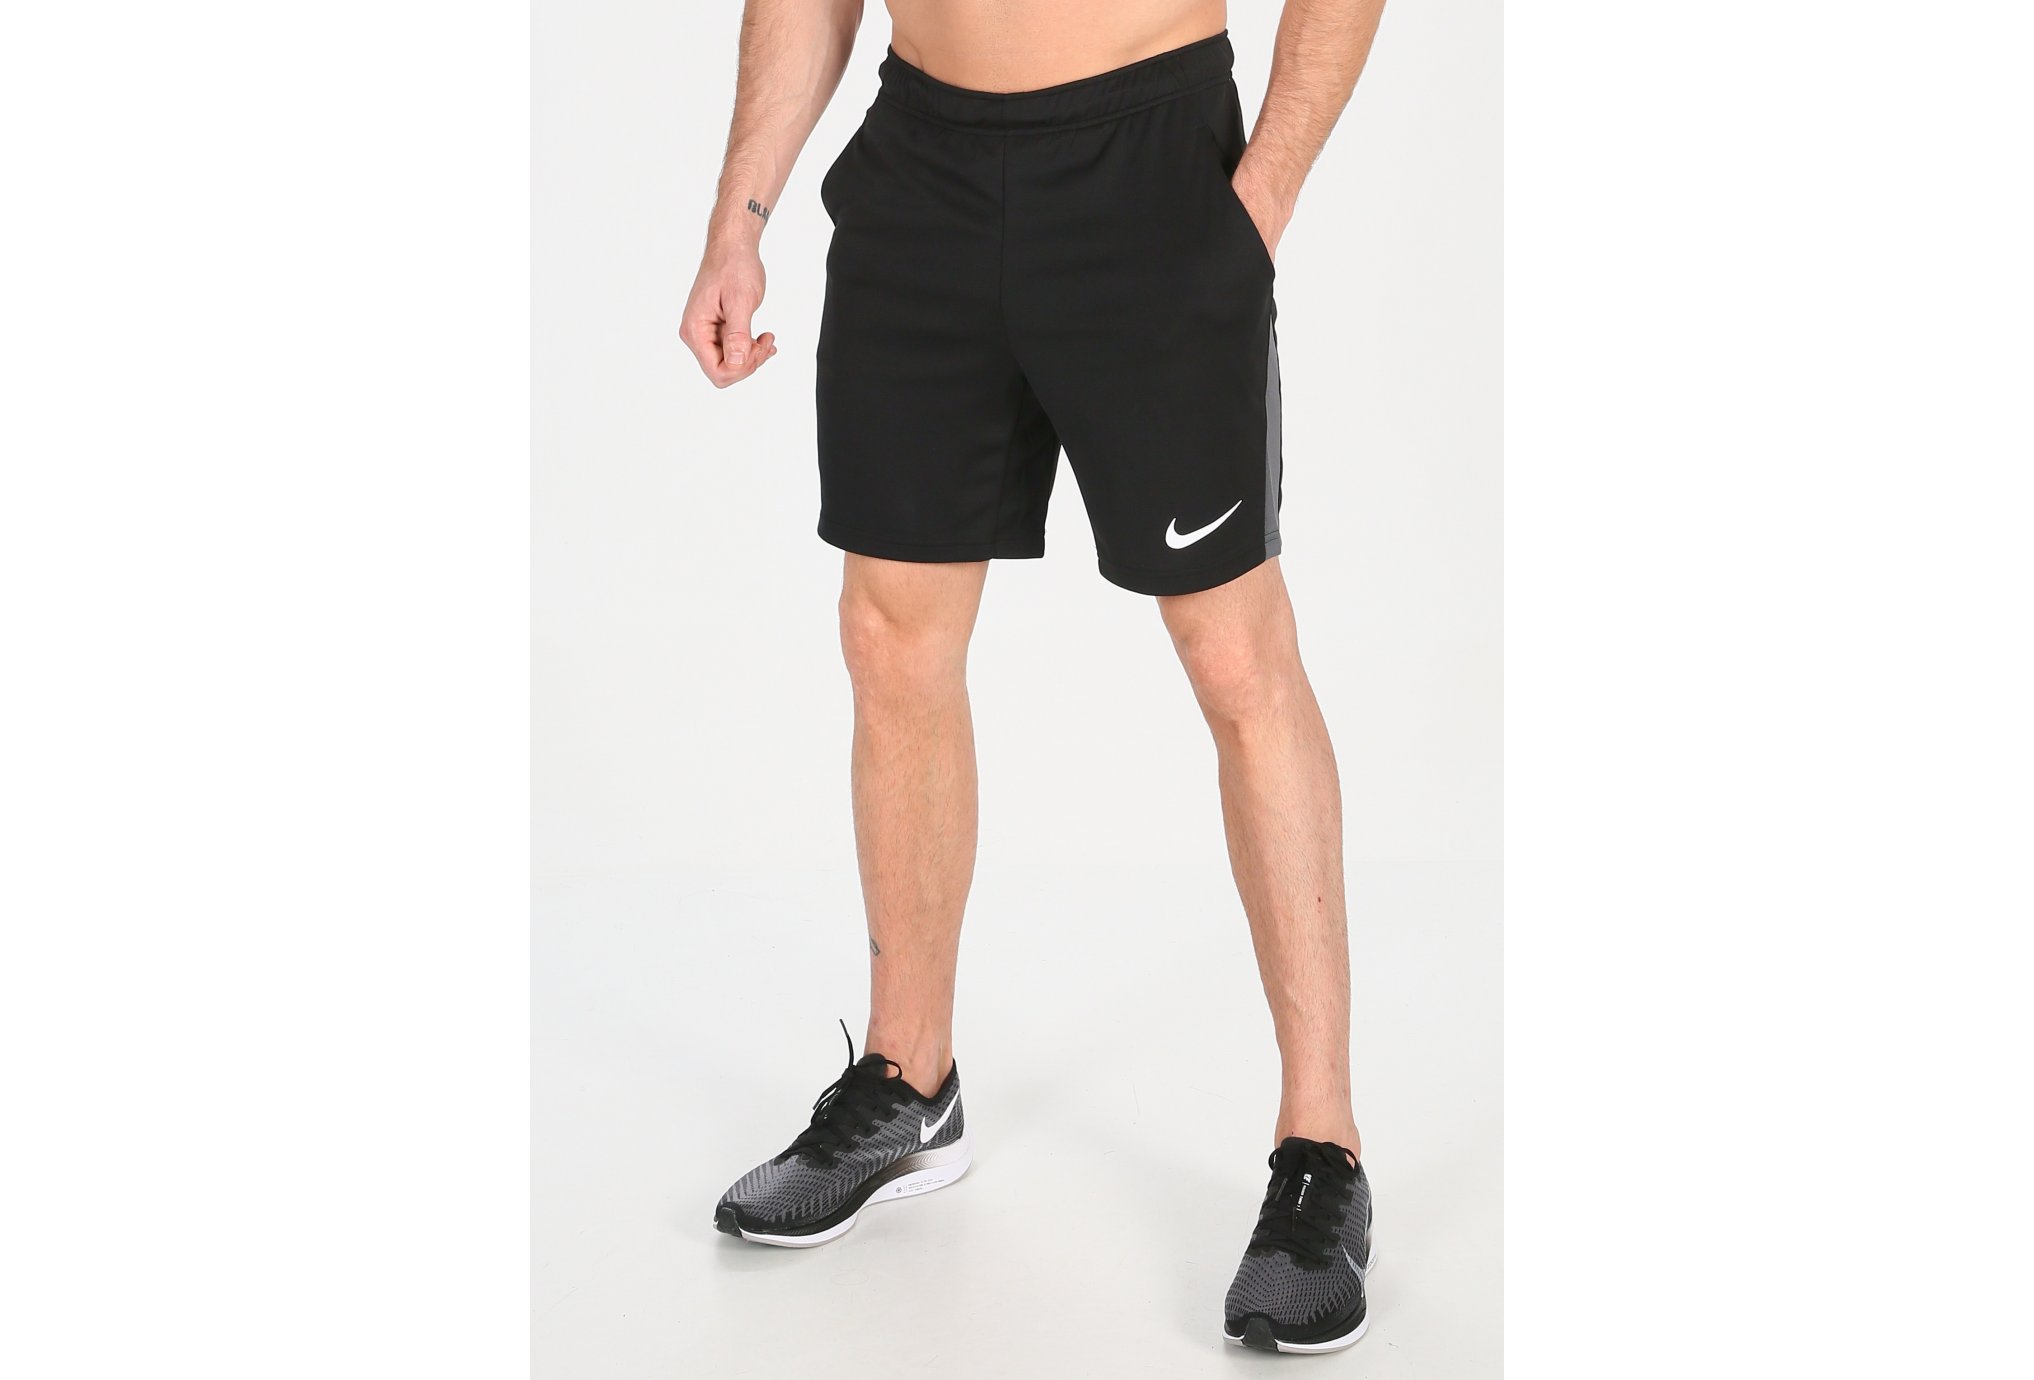 Nike Dry 5.0 M vêtement running homme